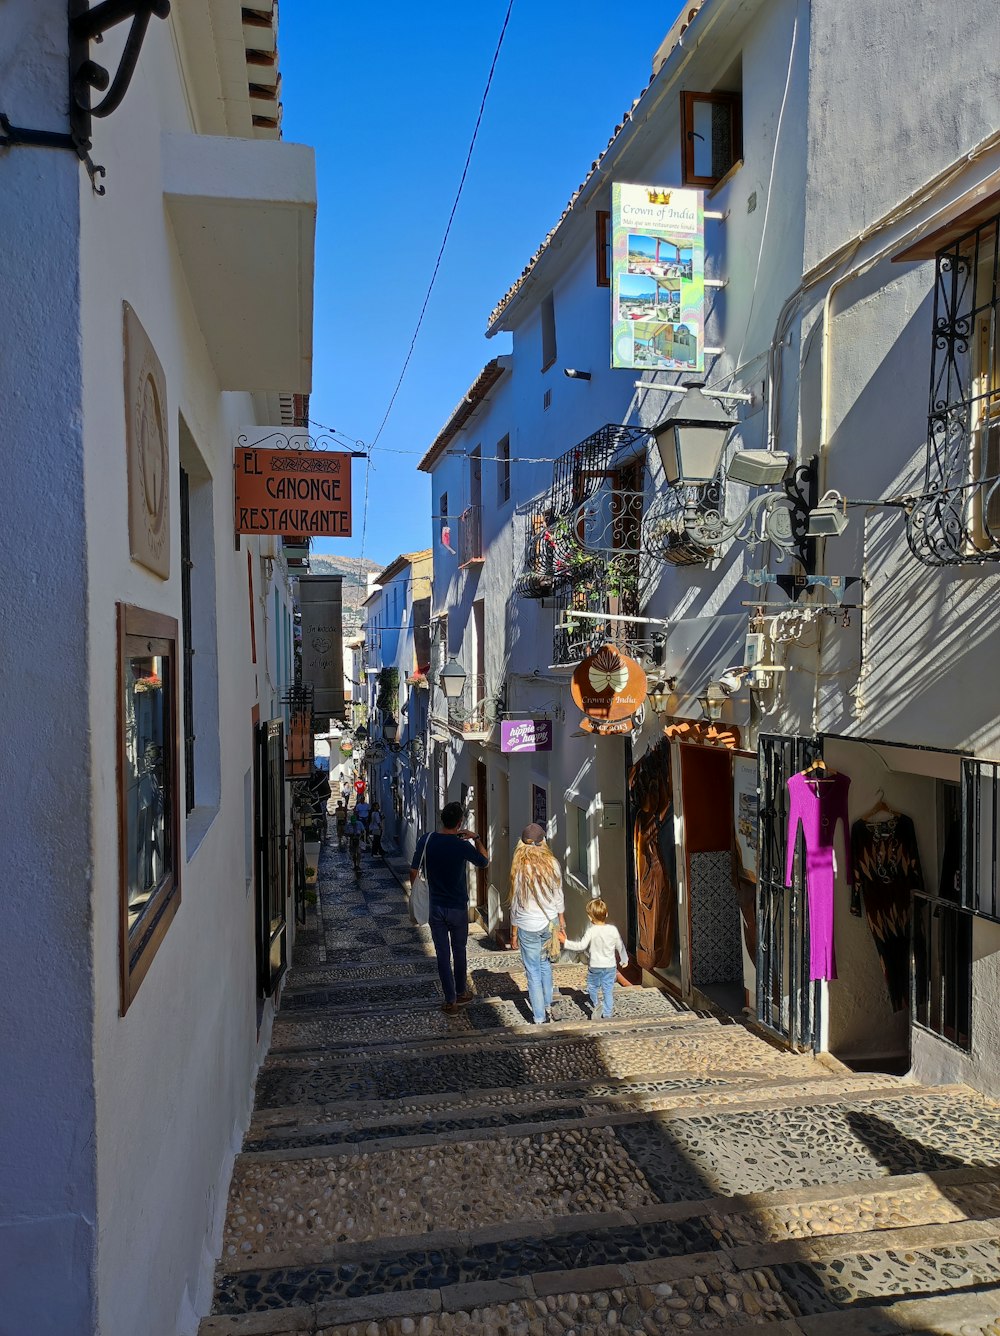 people walking down a narrow street